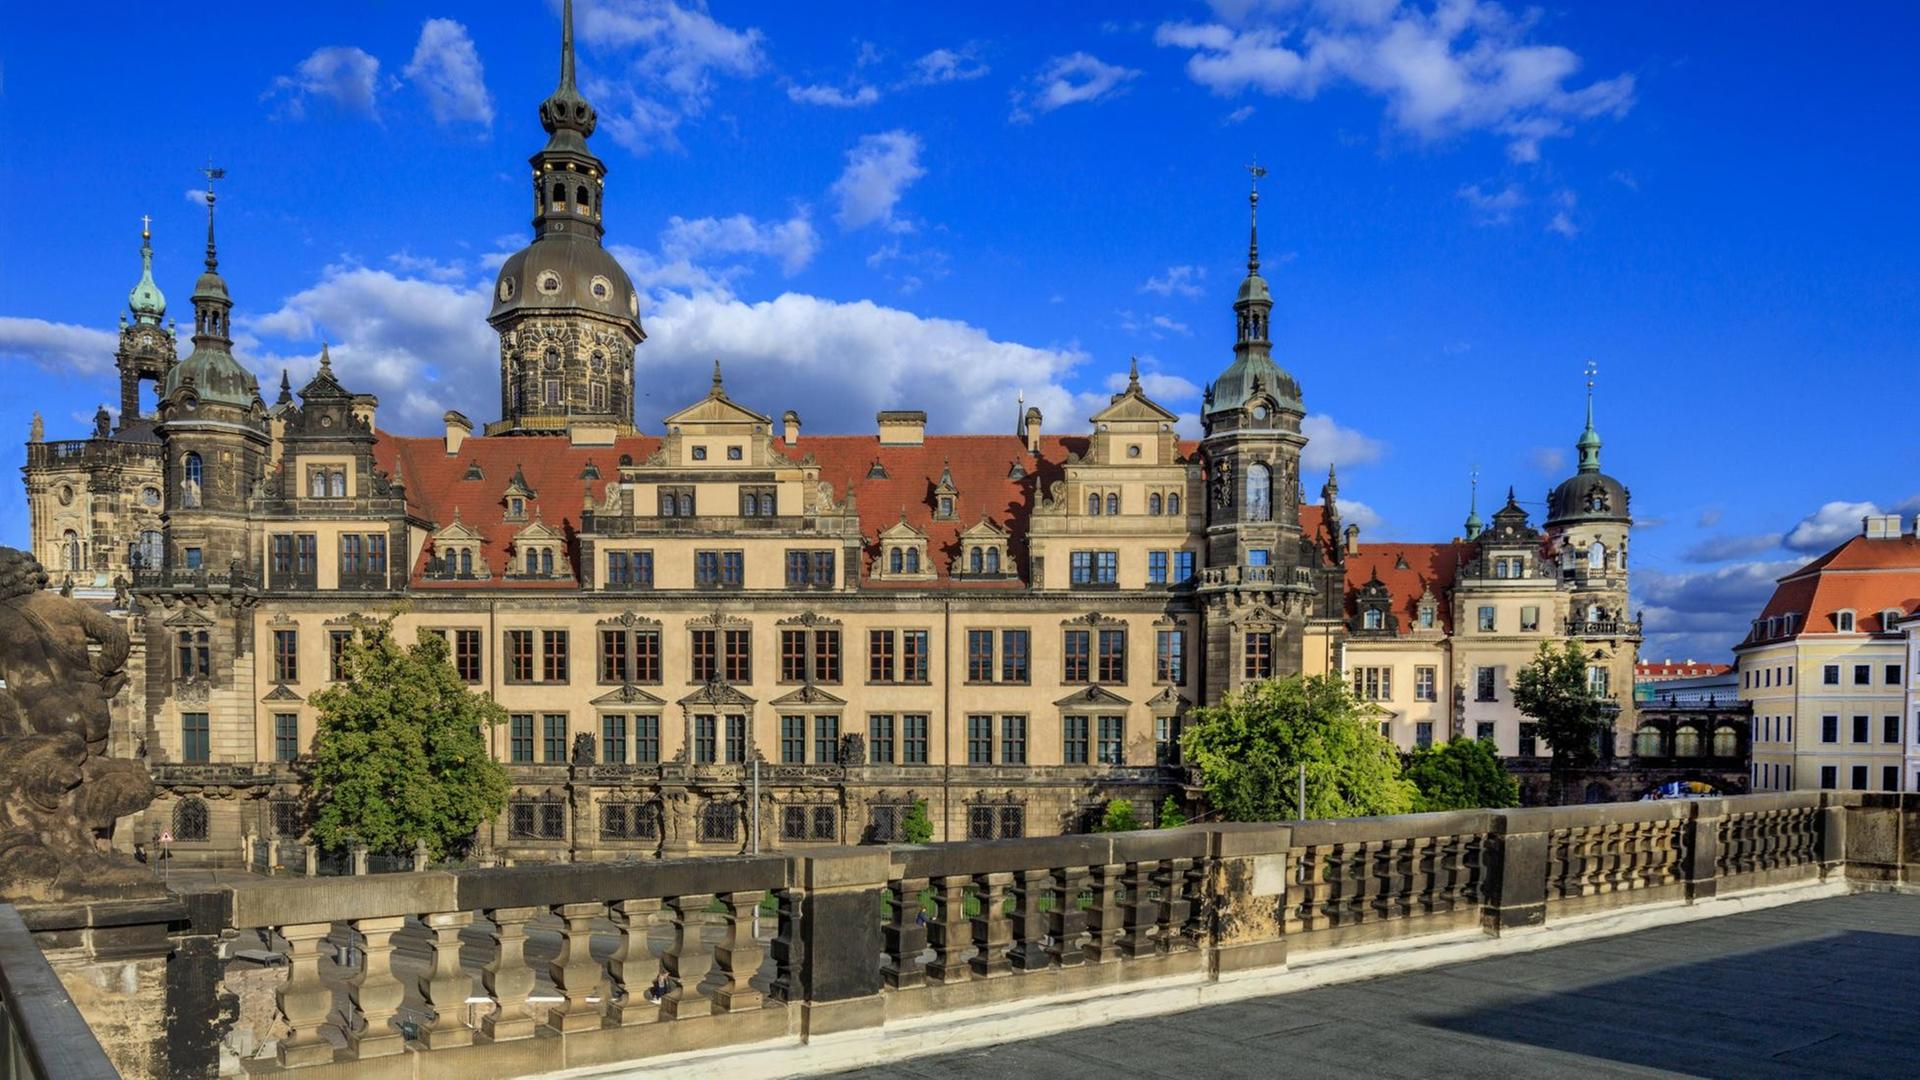 Das Residenzschloss Dresden zählte einst zu den prächtigsten und den bedeutendsten Schlossbauten der Renaissance in Deutschland.